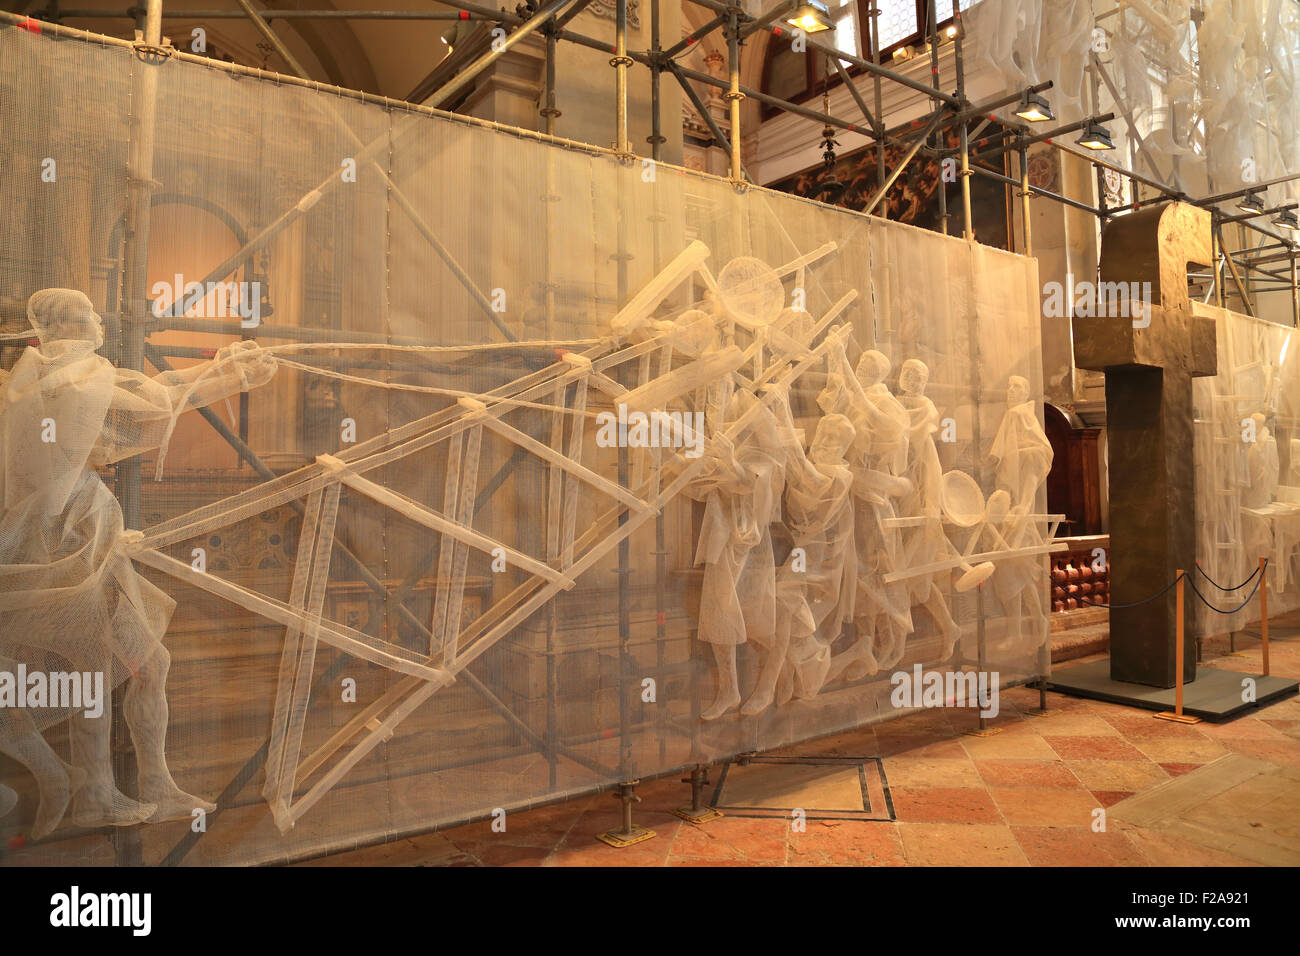 Église de Facebook la religion. Biennale d'Art de Venise 2015 / La Biennale di Venezia. Convertir par le Groupe de recyclage Banque D'Images